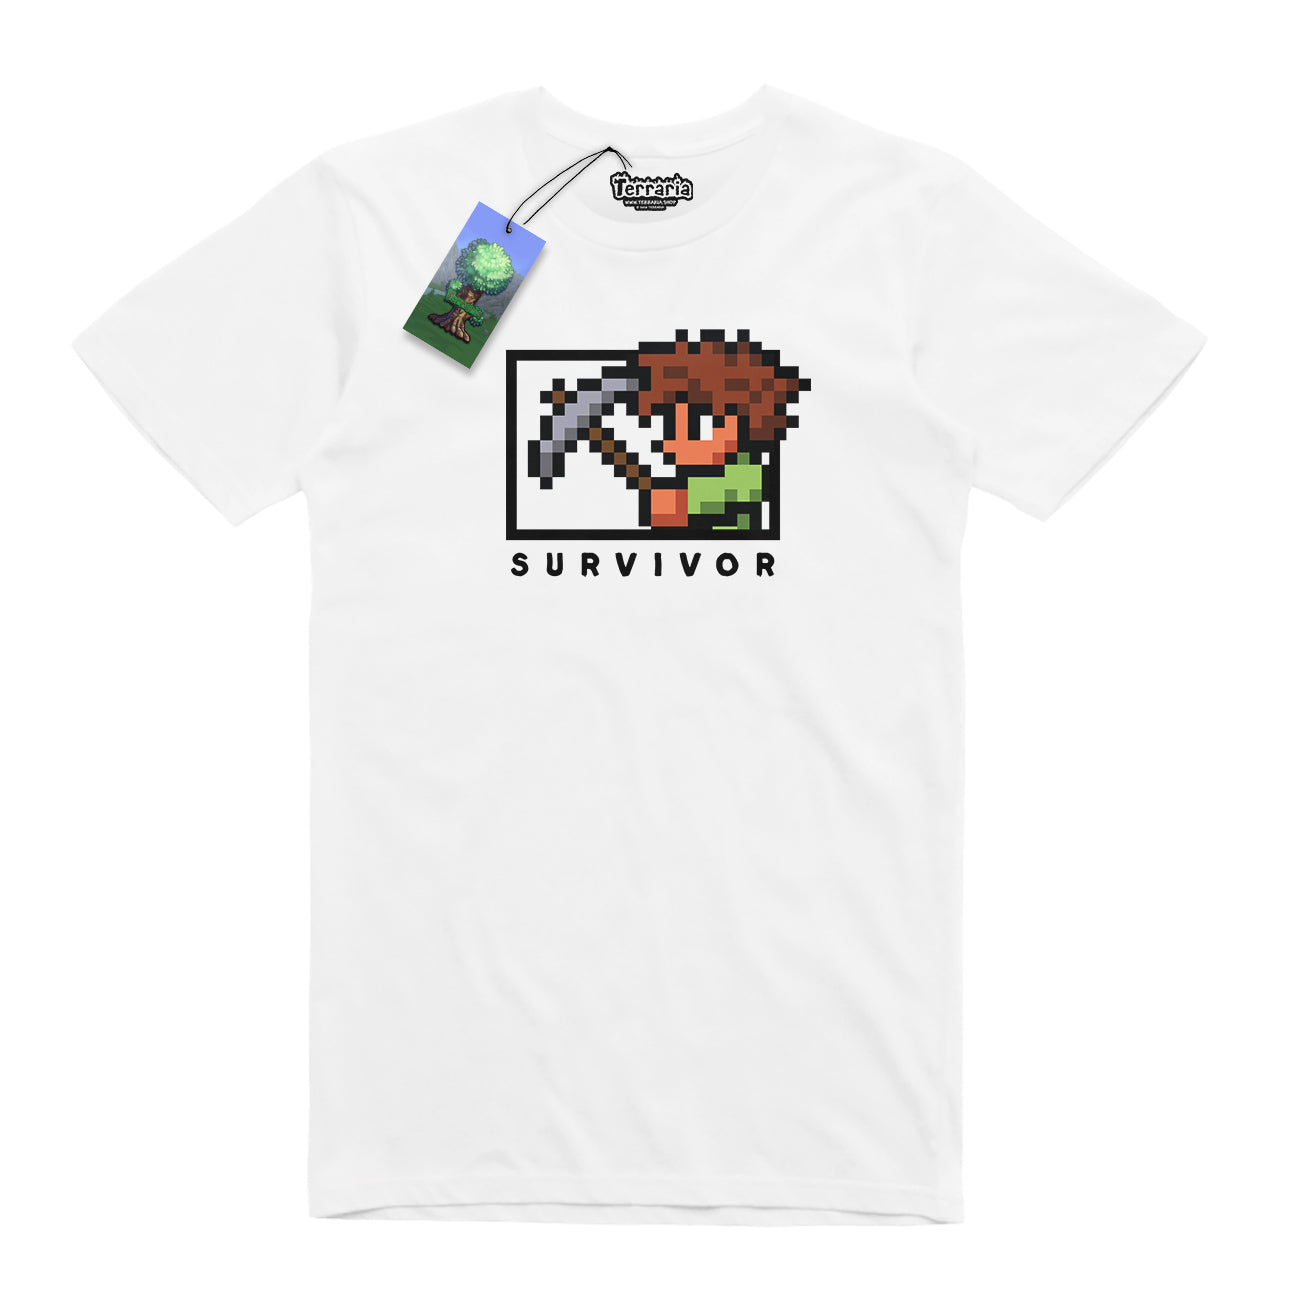 Survivor T-shirt